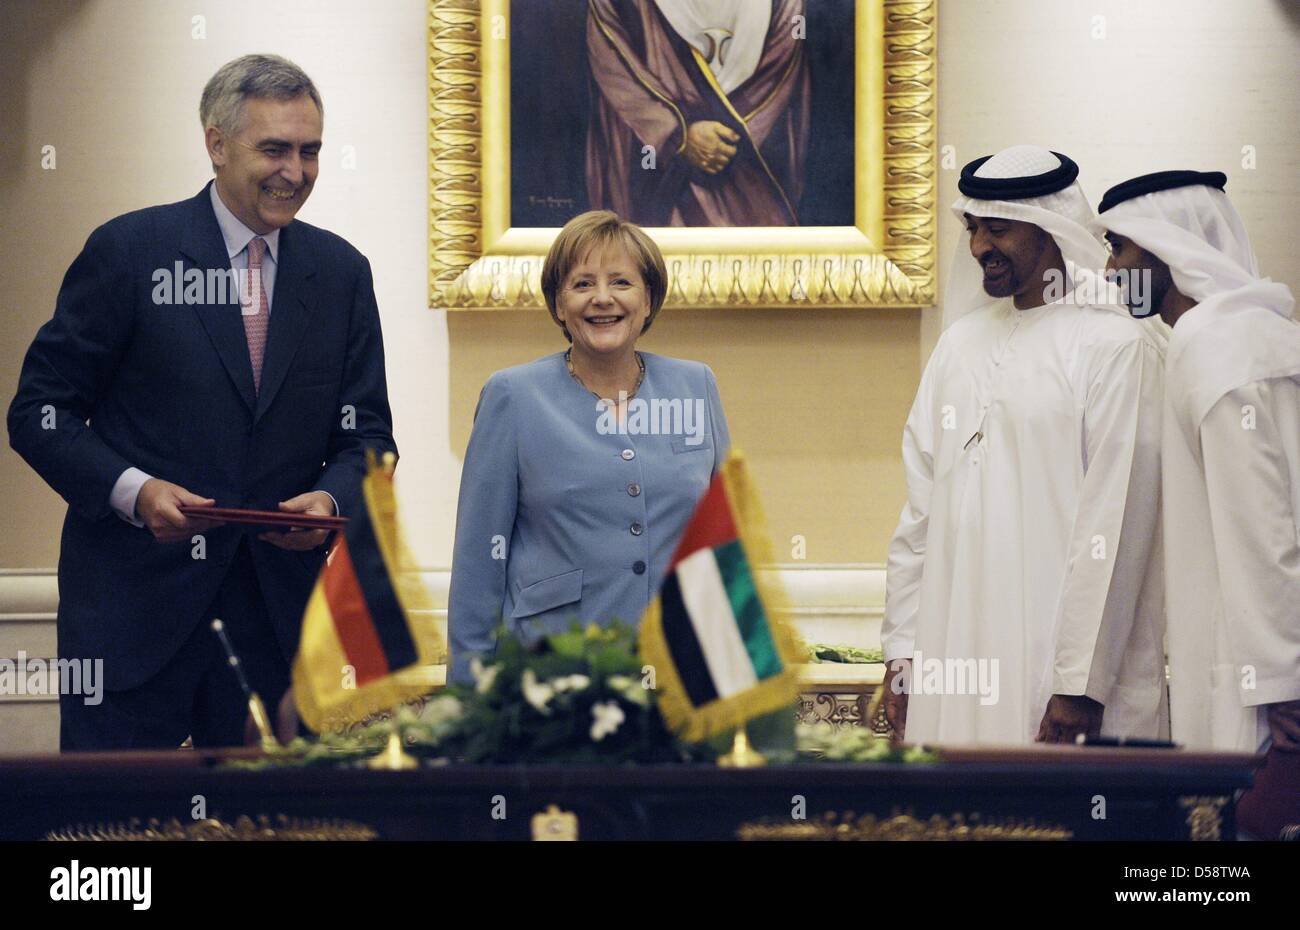 Die VAE Kronprinz und Vizepräsident Sheik Mohammed bin Said al-Nahjan (2-R), Bundeskanzlerin Angela Merkel, der CEO von Siemens, Peter Löscher (L), und Scheich Diyab al-Nahjan (R) nach der Unterzeichnung eines Vertrages in Abu Dhabi, Vereinigte Arabische Emirate, 24. Mai 2010. Frau Merkel wird vier der sechs Gulf Cooperation Council Länder bis 27. Mai 2010 besuchen. Verbesserung der wirtschaftlichen und p Stockfoto